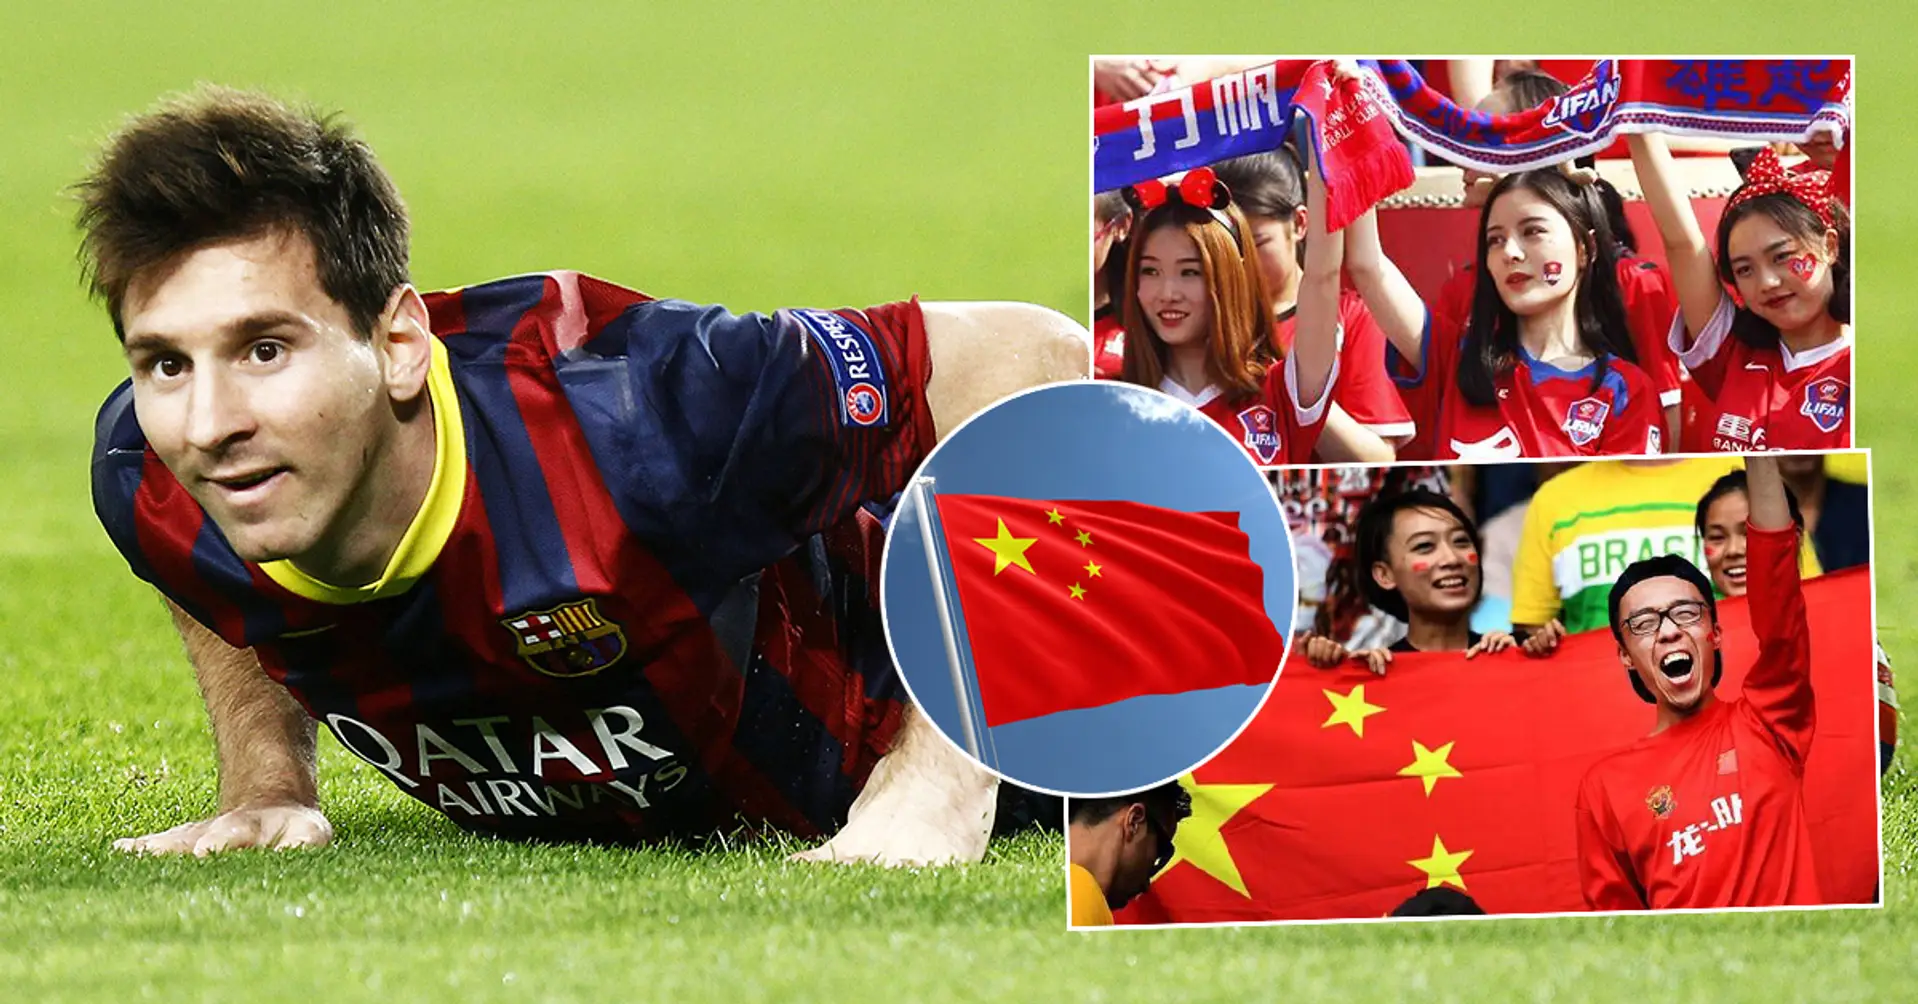 تم تسمية أشهر لاعبي كرة القدم في الصين - ميسي الثالث 